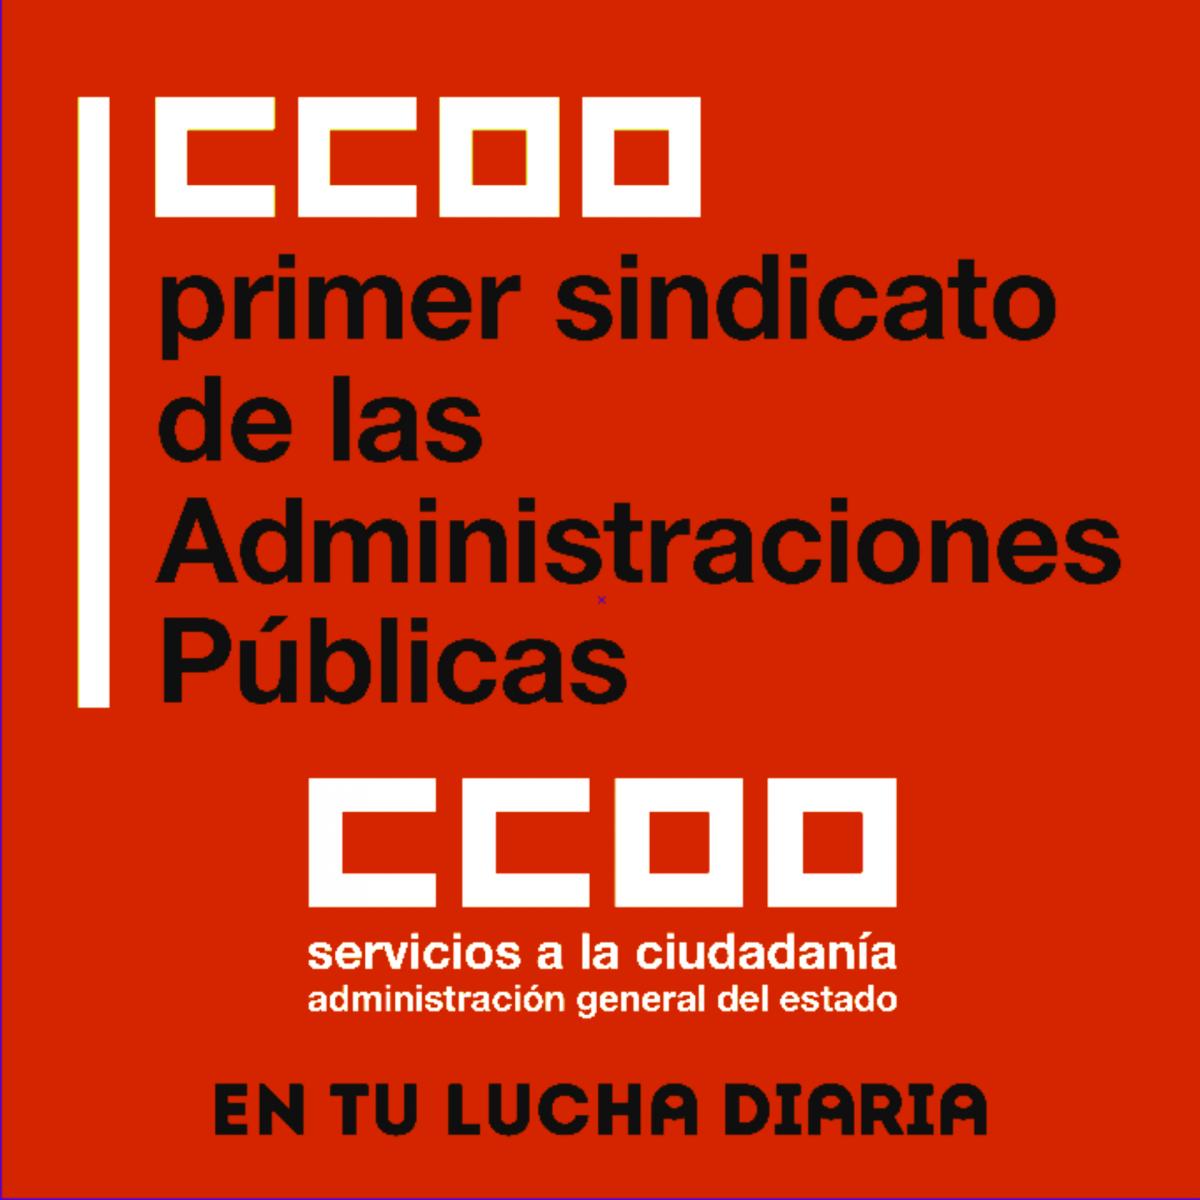 CCOO primer sindicato Administraciones públicas